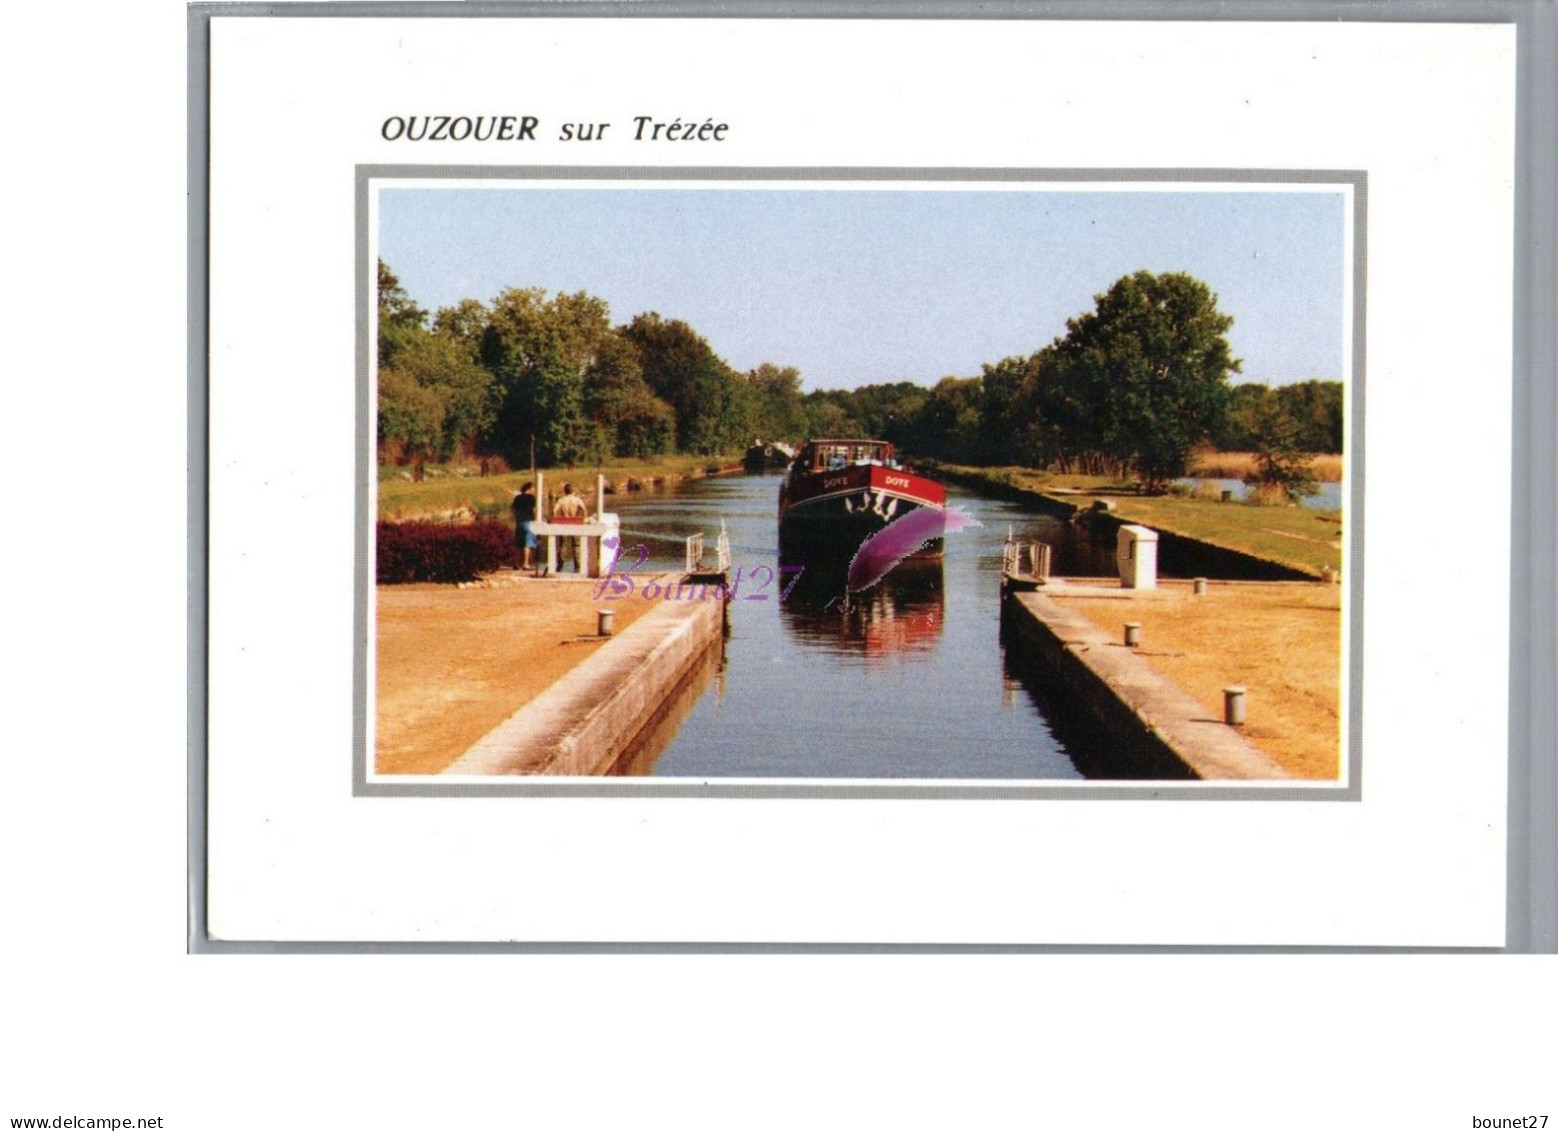 OUZOUER SUR TREZE 45 - Vue Générale Sur Le Canal Passage D'une Péniche Bateau - Ouzouer Sur Loire